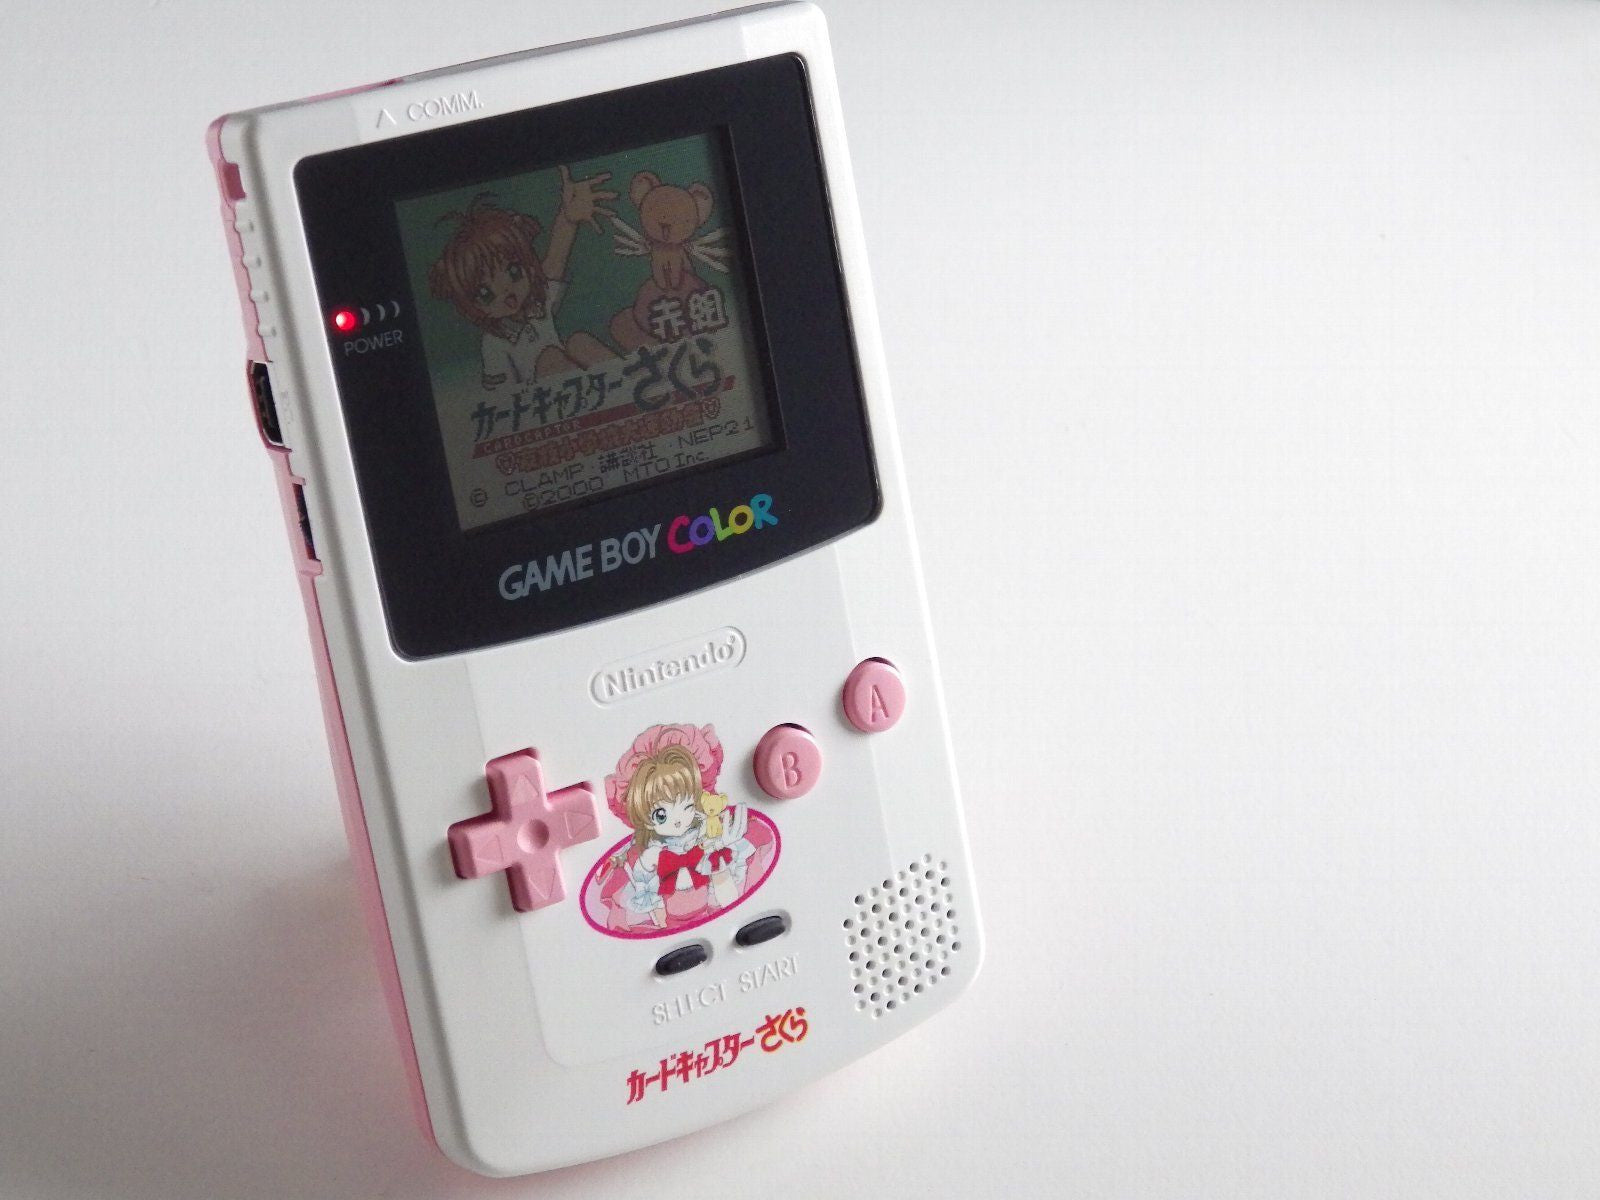 Play Game Boy Advance Card Captor Sakura - Sakura Card de Mini